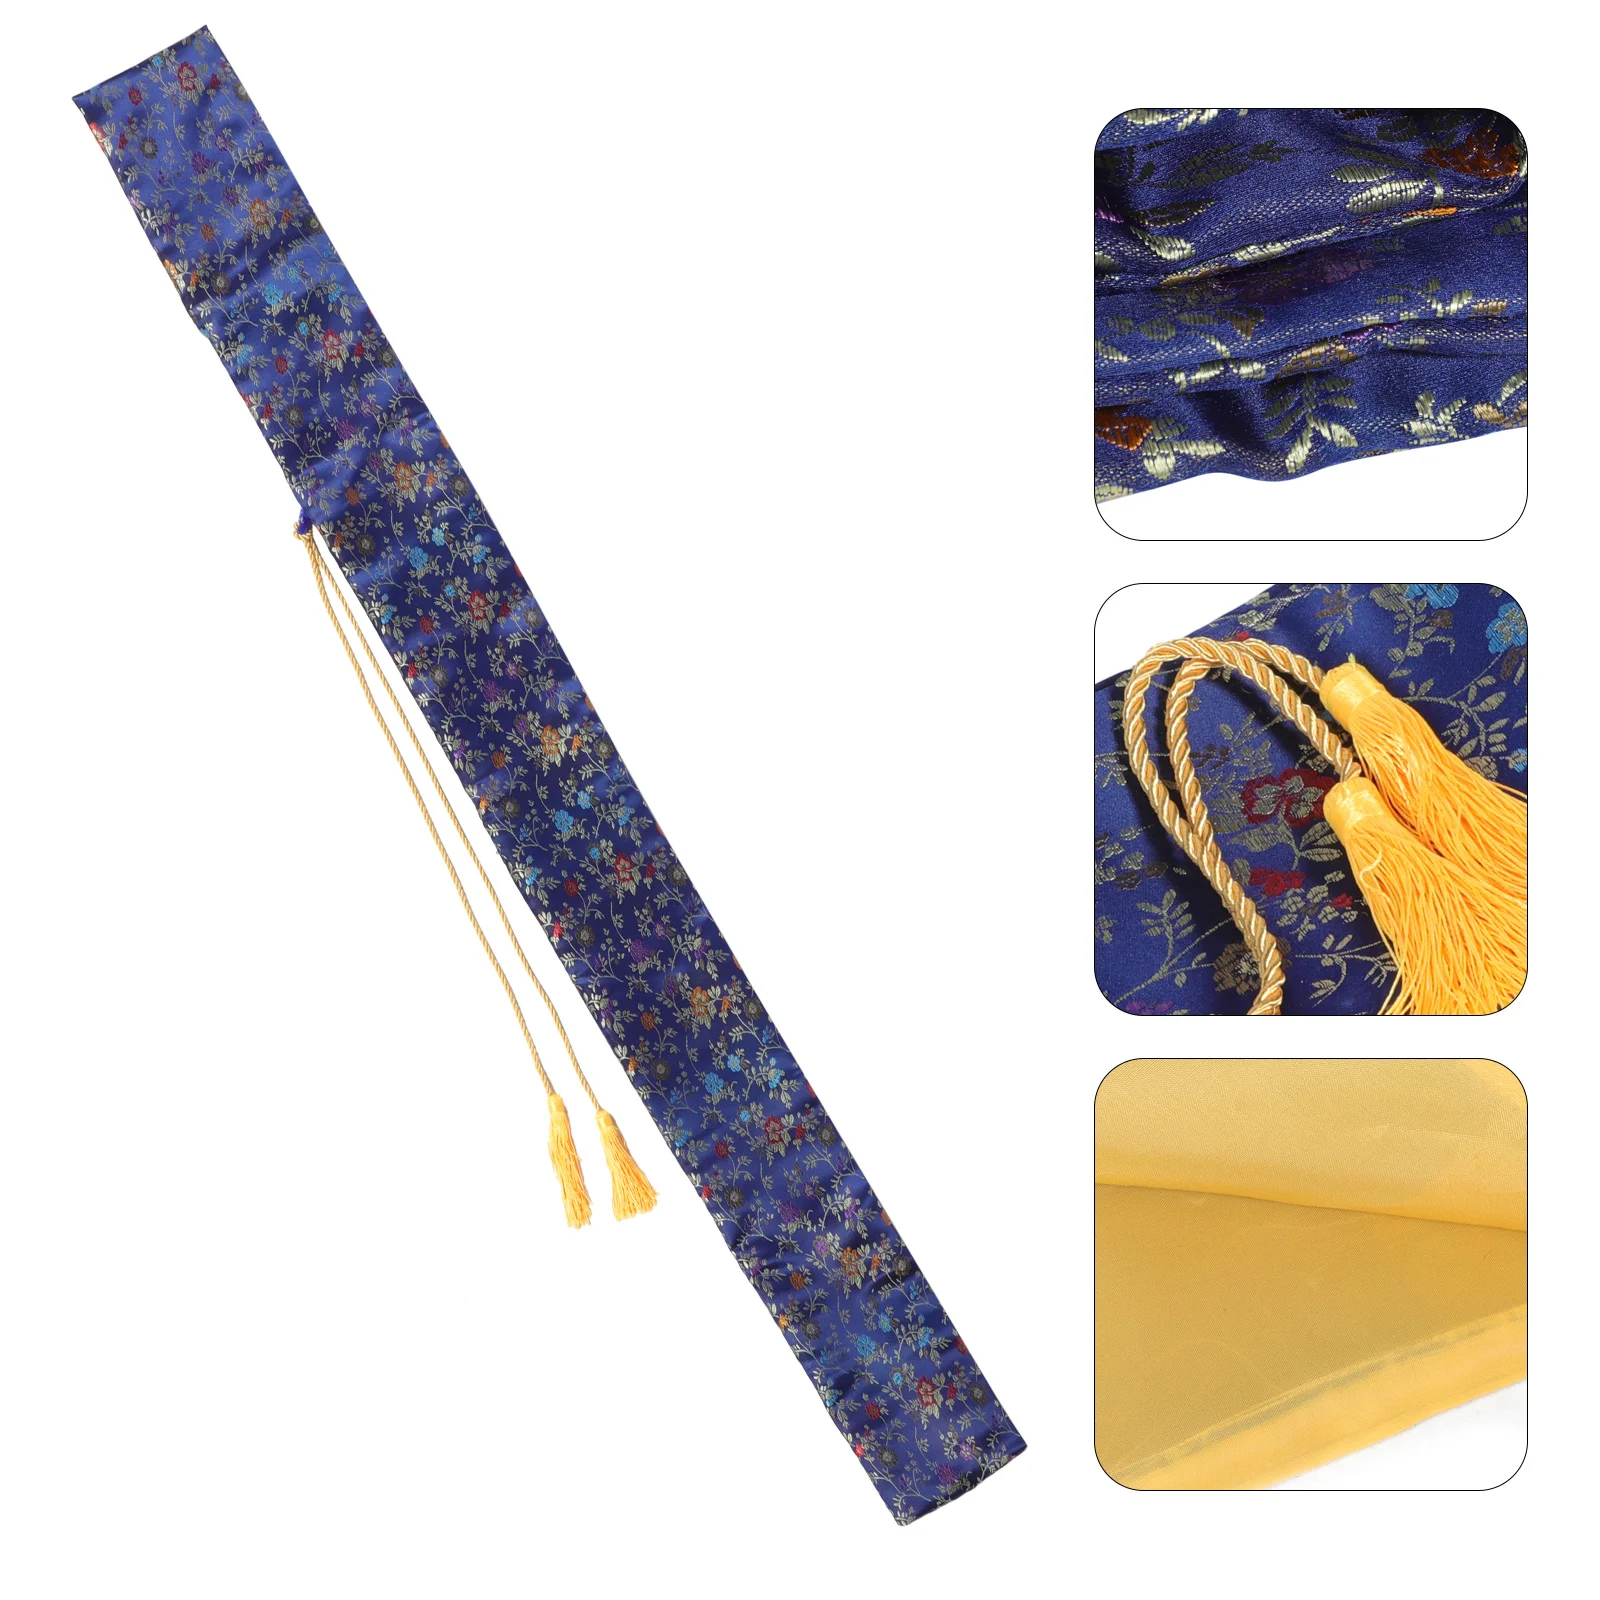 

Шёлковый Меч сумка-Чи Меч сумка самурайский хранилище многоцелевой японский катана Контейнер сумка-Органайзер держатель для домашнего хозяйства